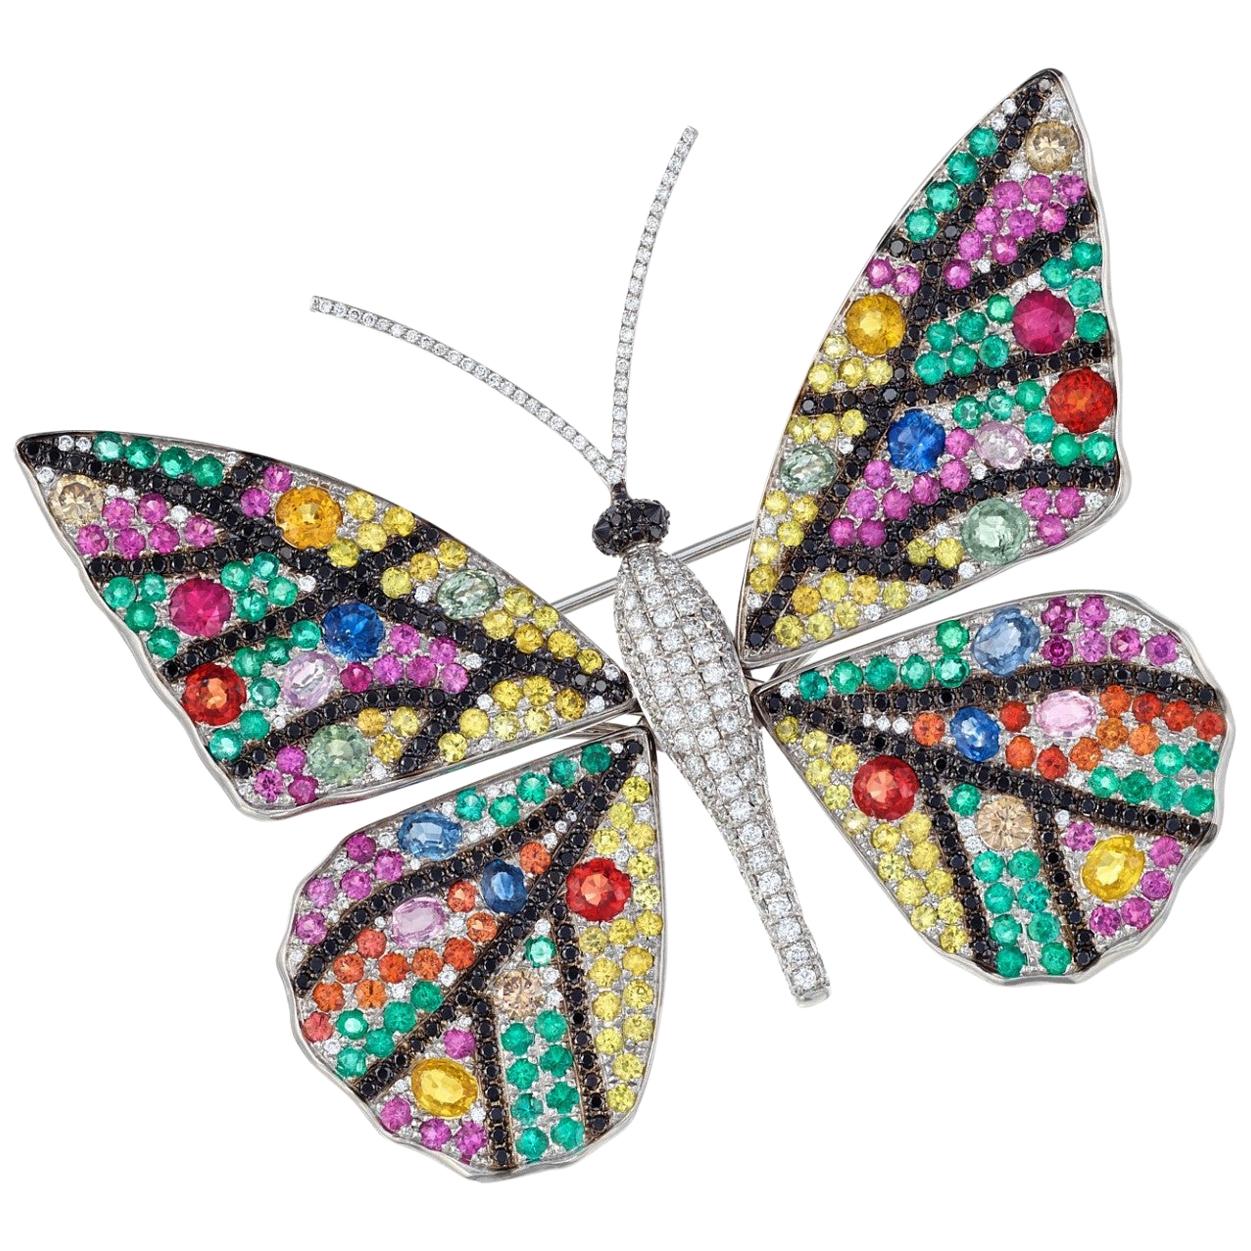 Mehrfarbige Edelsteinbrosche "Tremblant Butterfly" von Manuel Rosas